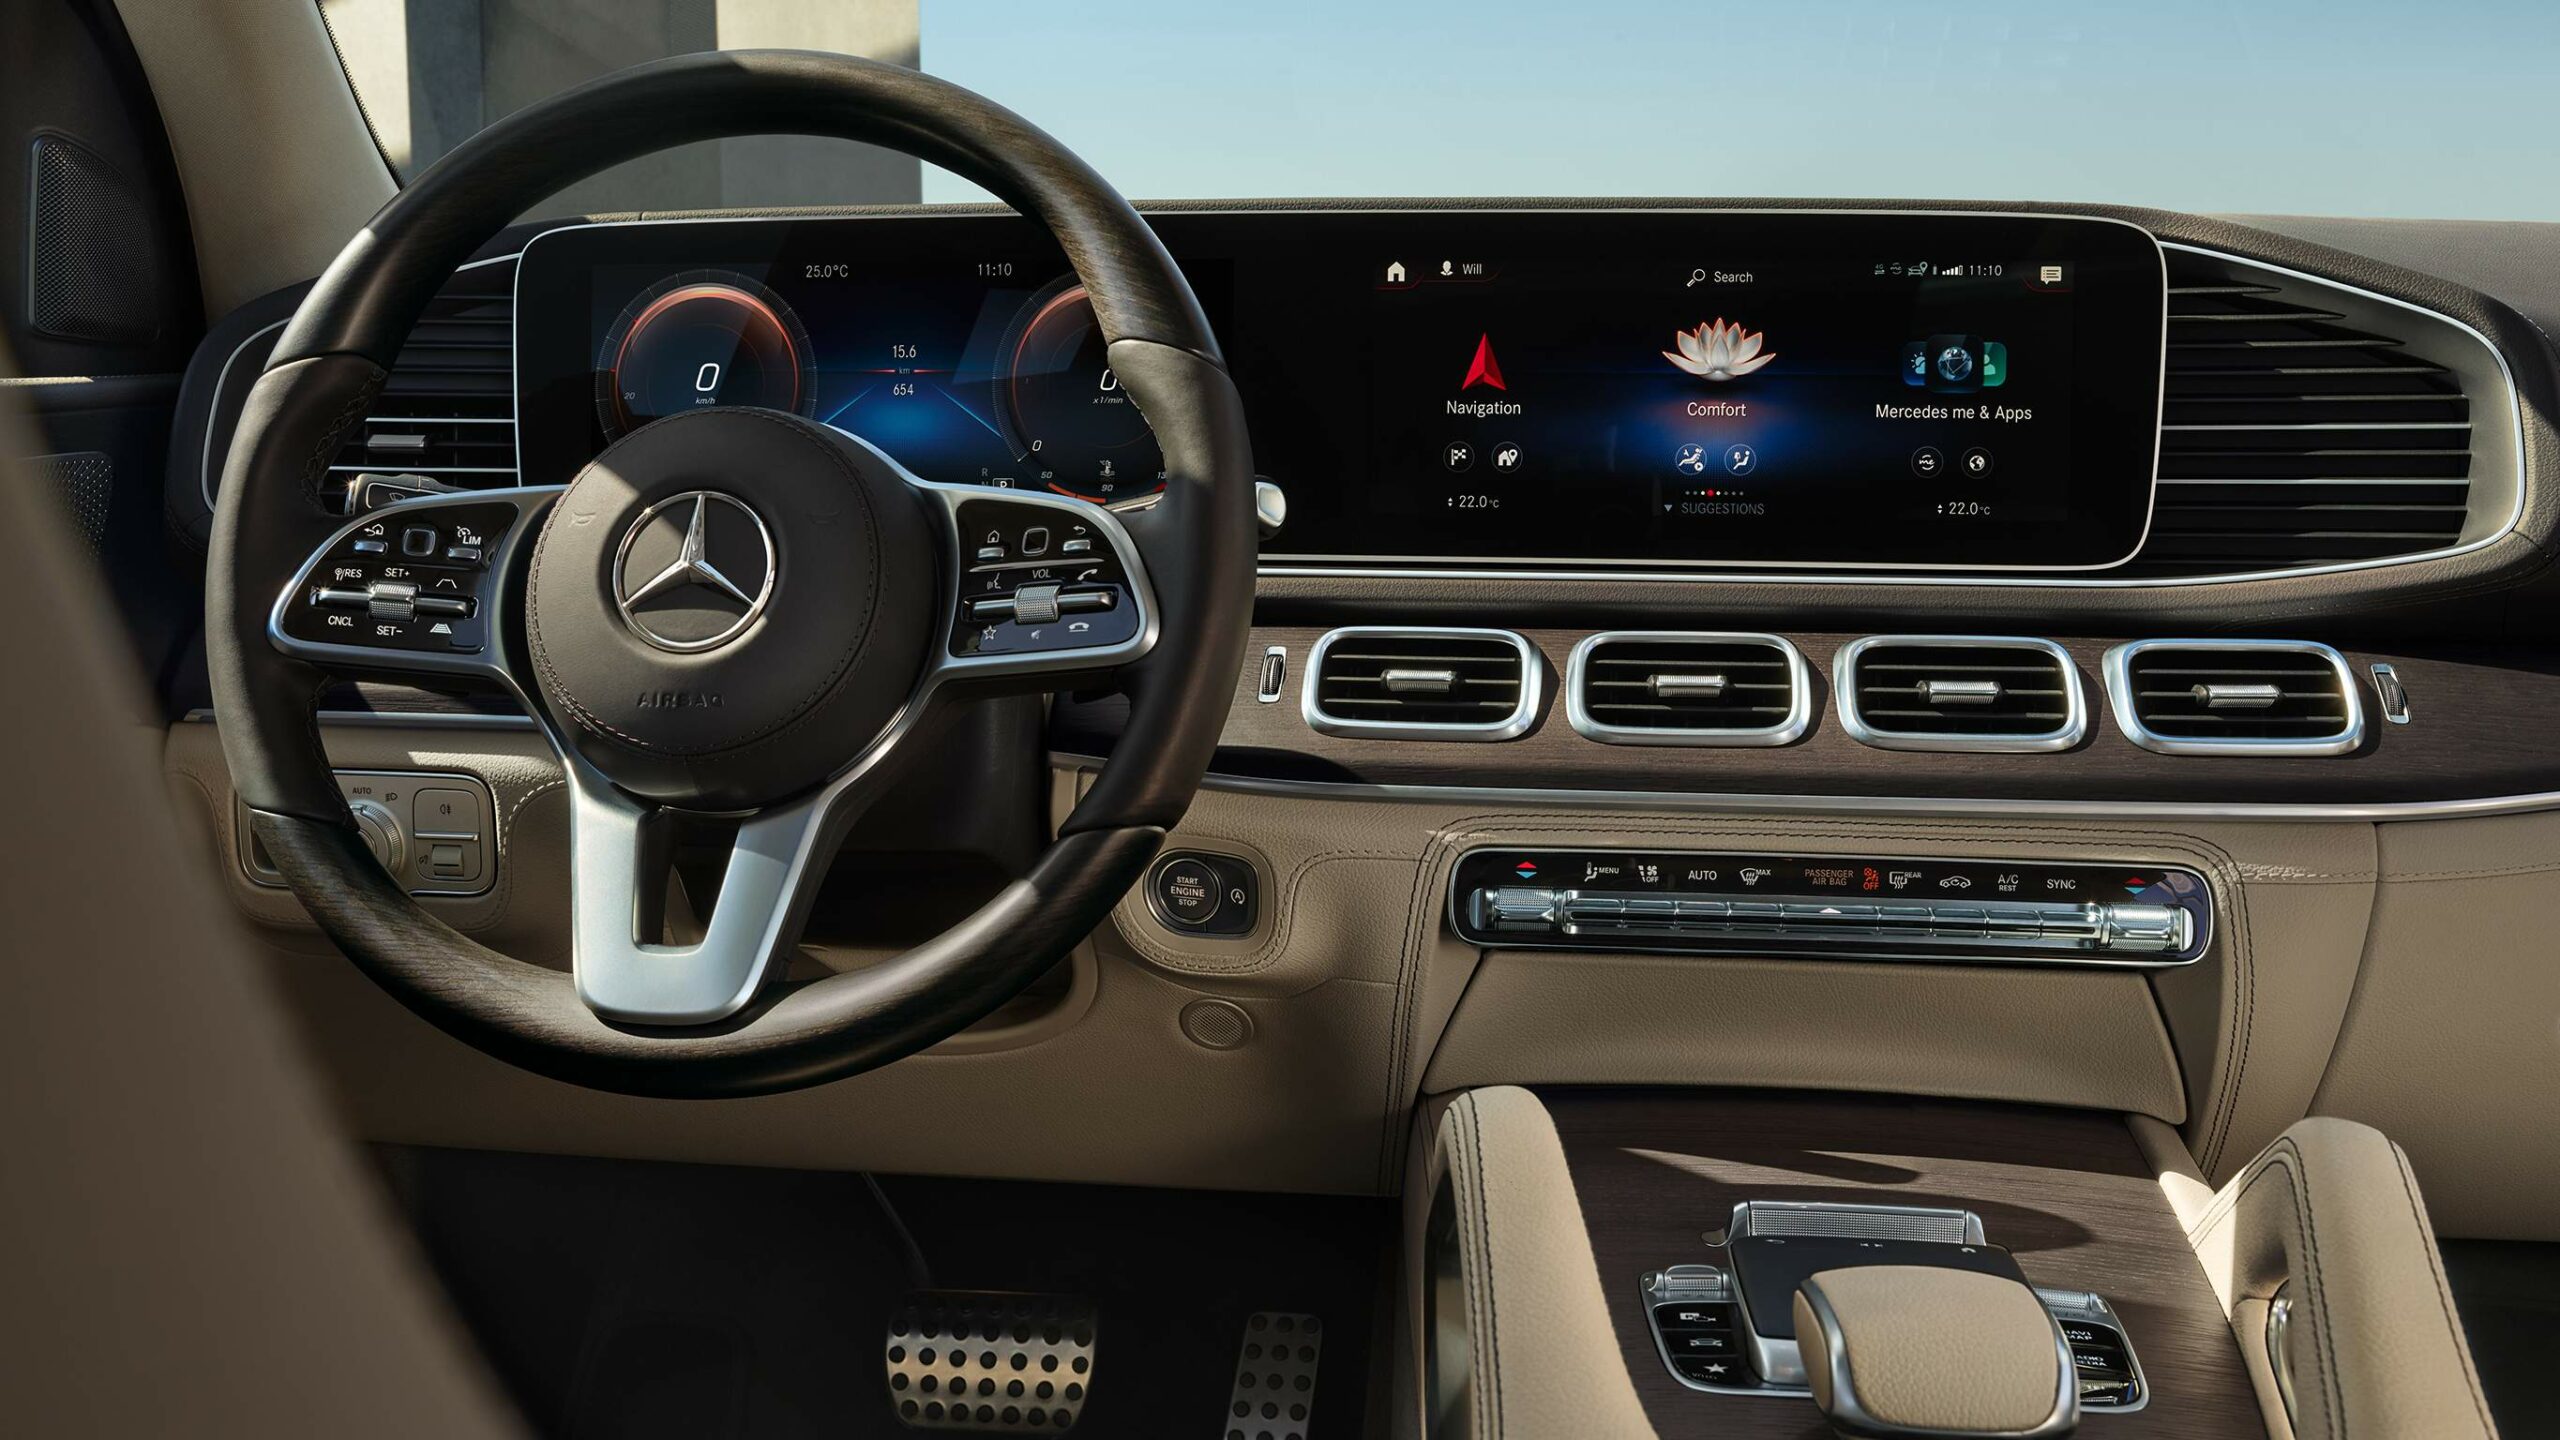 Confort de manejar la lujosa GLS SUV de Mercedes-Benz